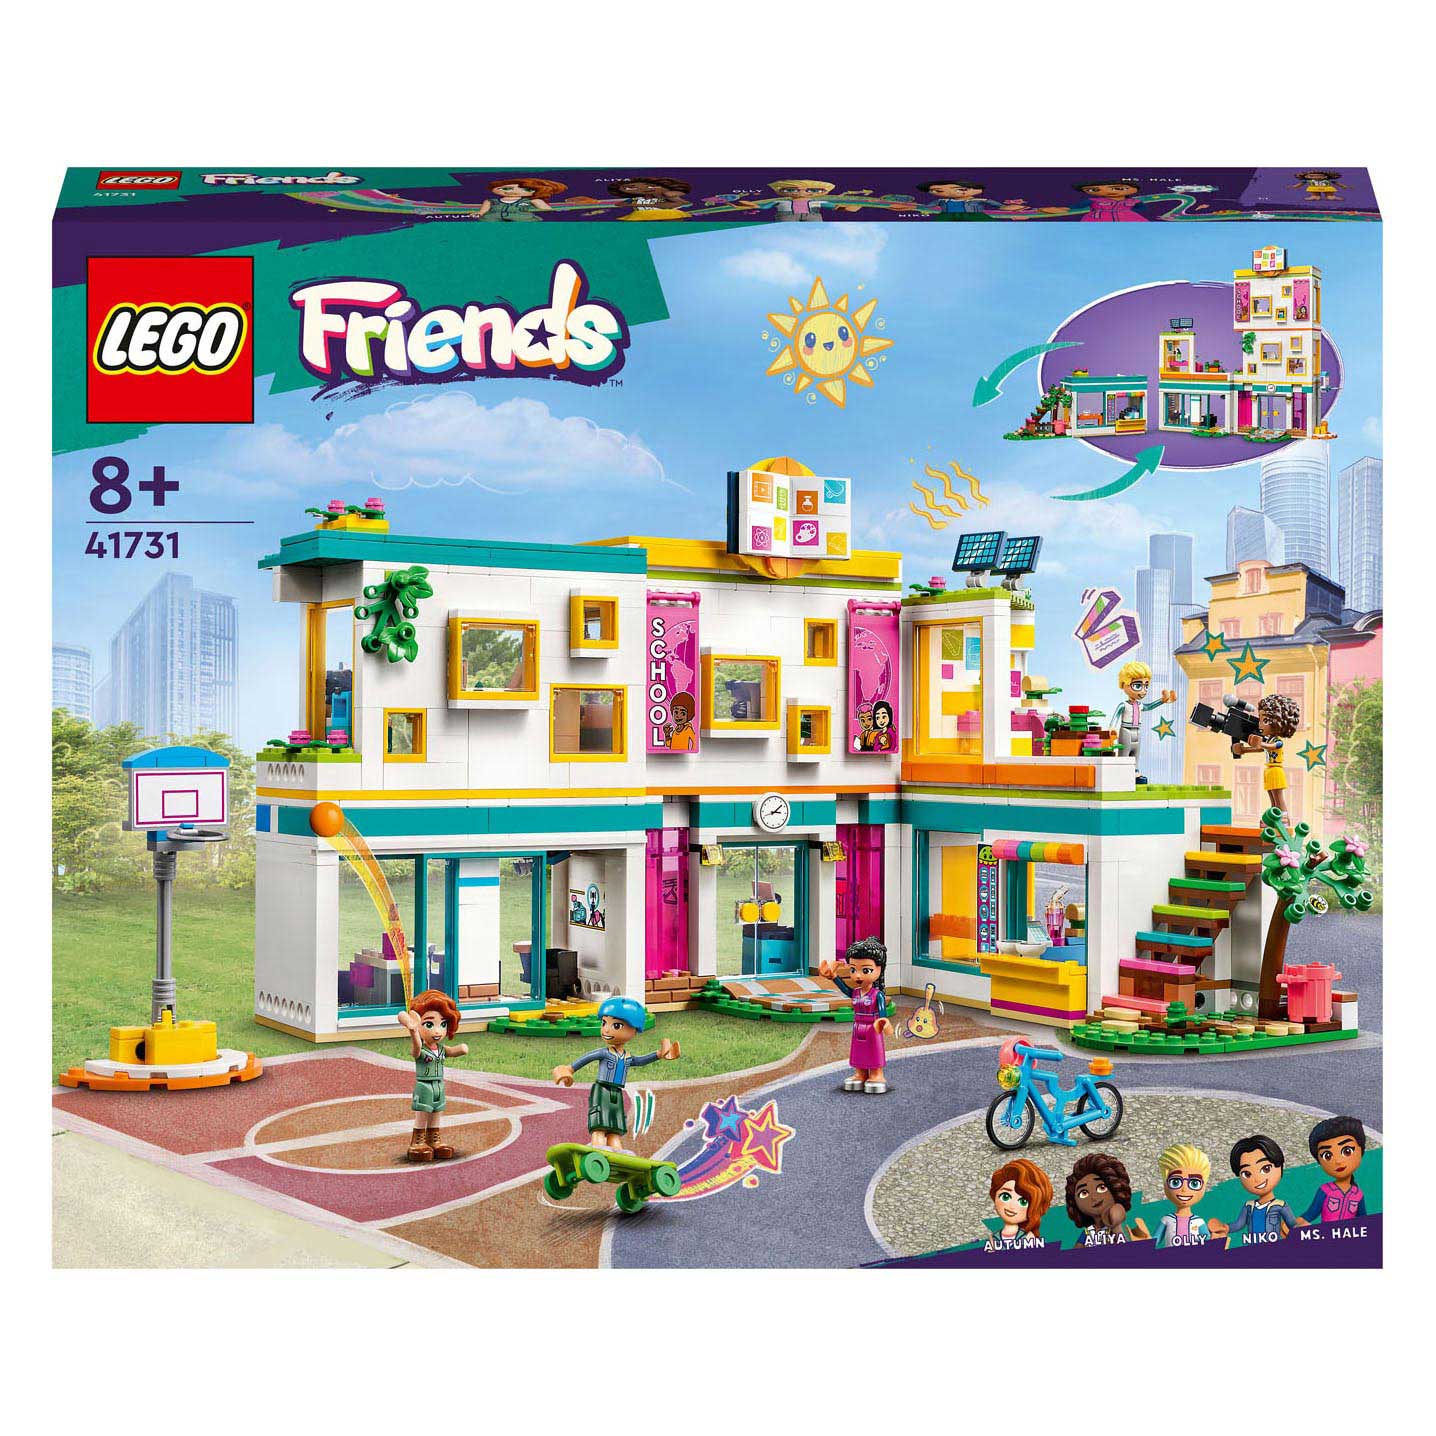 LEGO Friends 41731 Heartlake International School